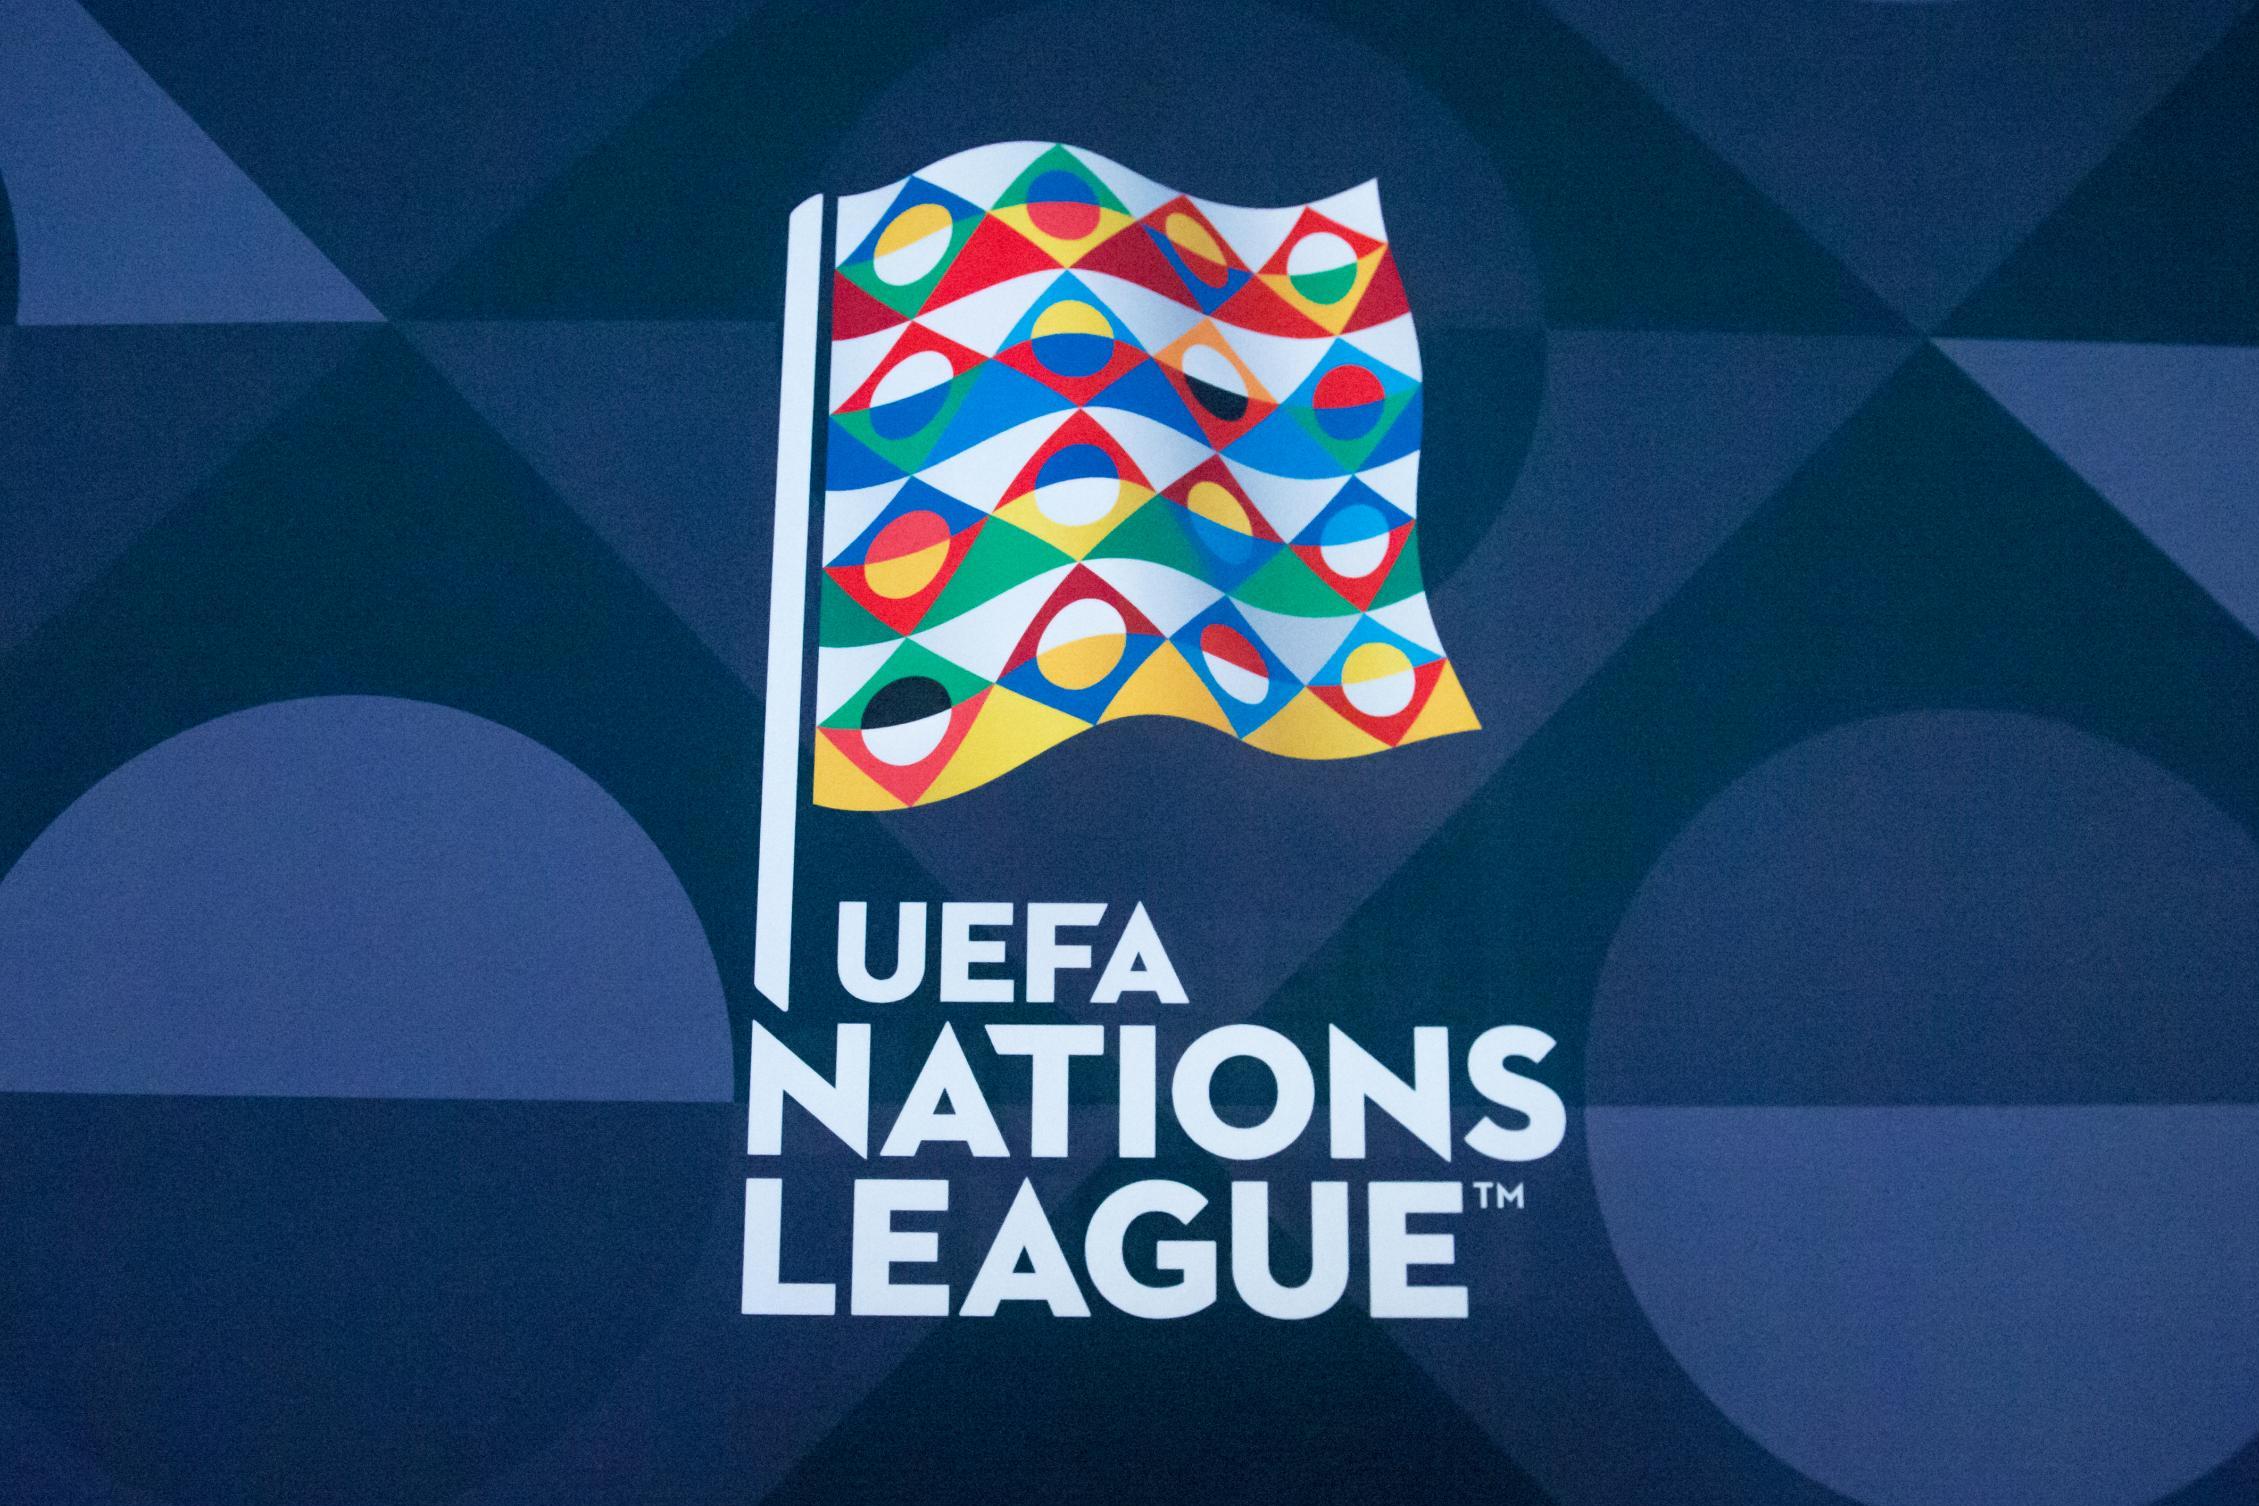 Uefa Nations League 2018 2019 Lịch Thi đấu Và Kết Quả Theo Giờ Vn